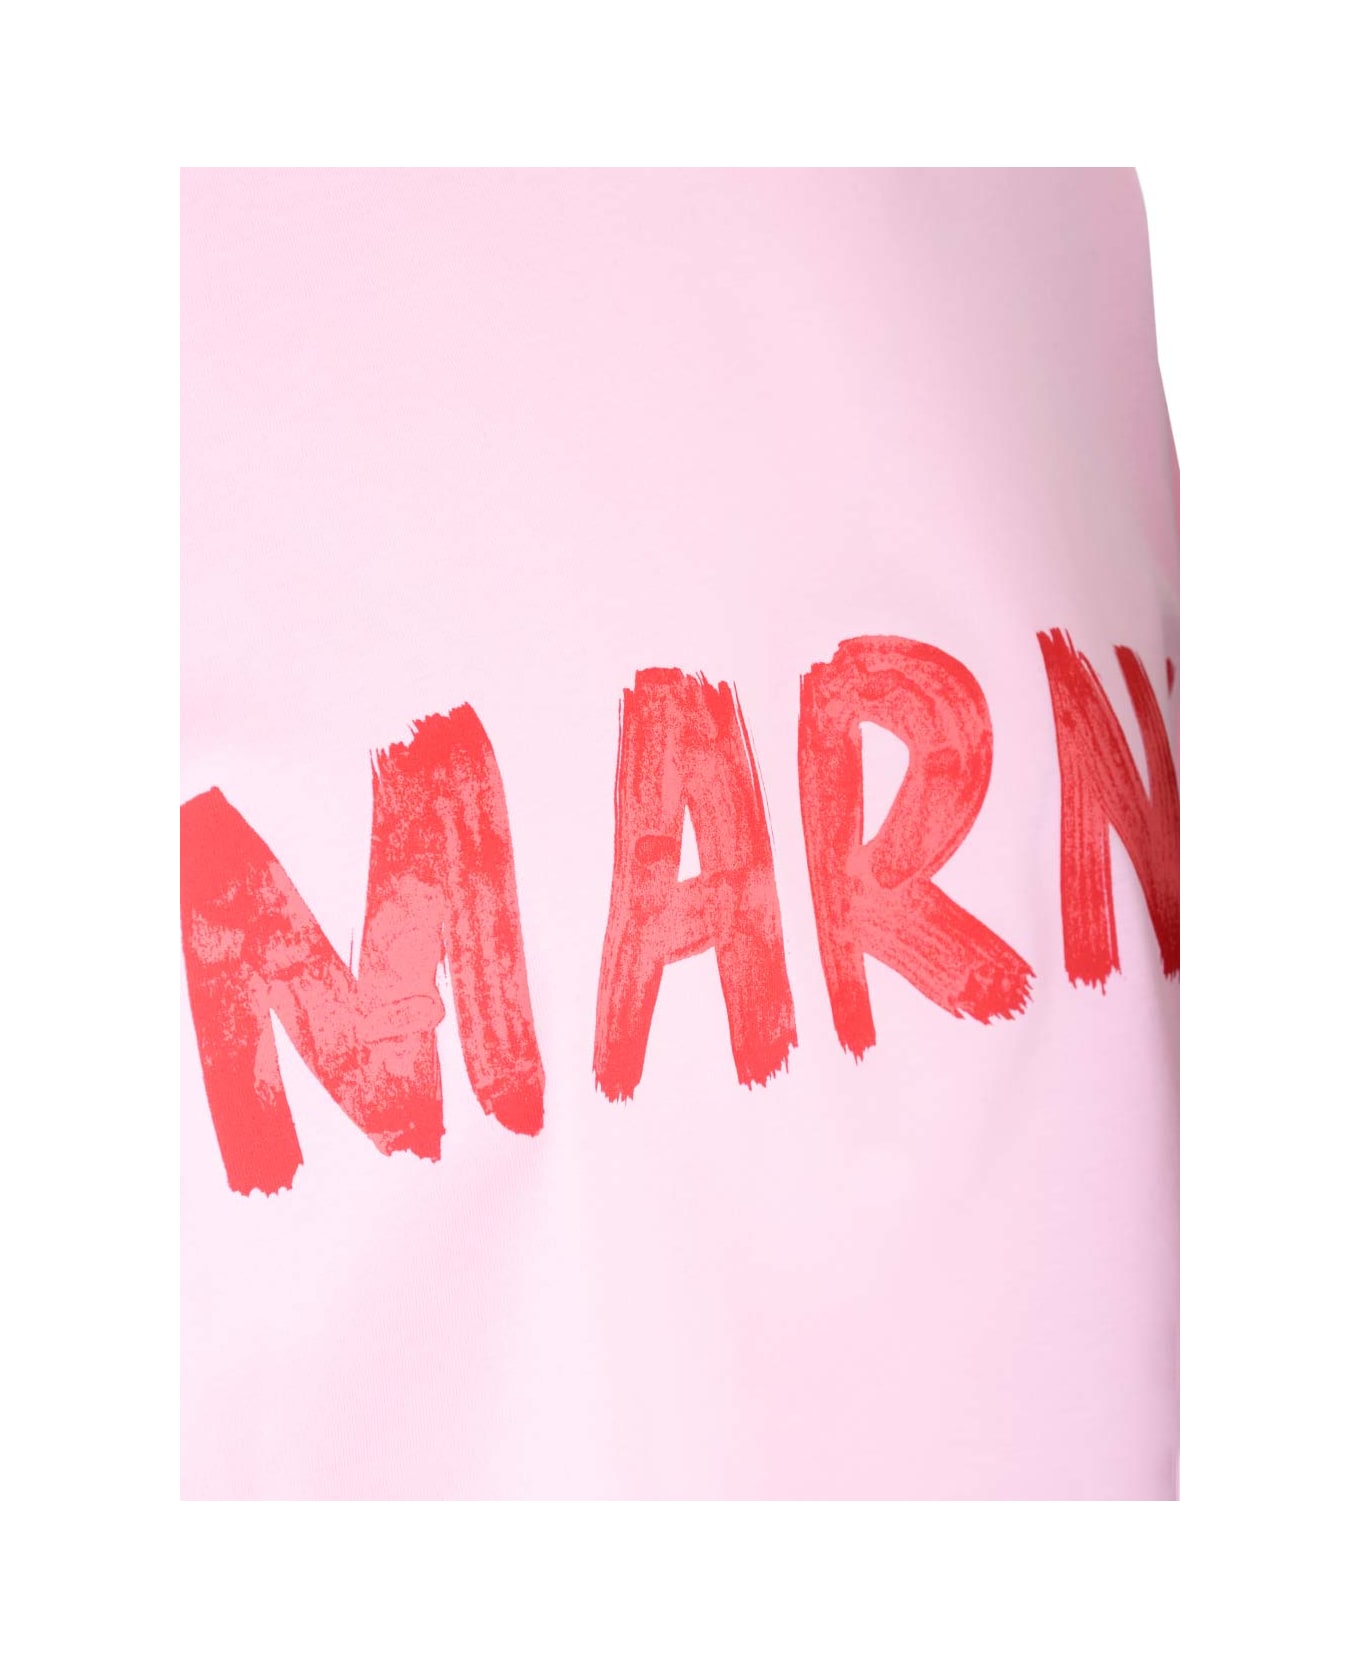 Marni Cropped T-shirt - Rosa トップス